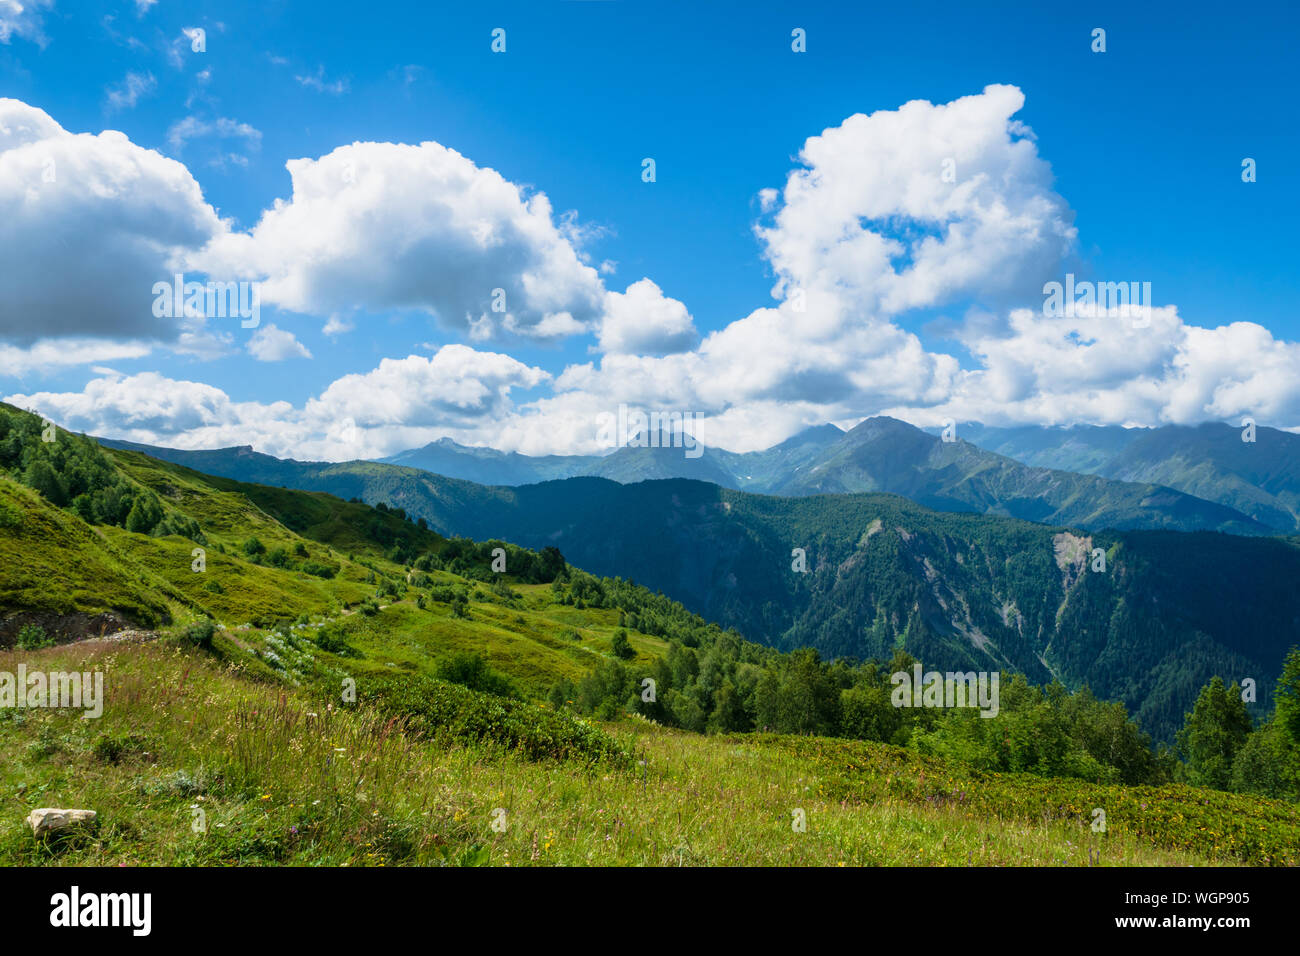 Paysage avec des montagnes de Svaneti sur le trekking et randonnées à vélo près de Mestia village dans la région de Svaneti, Georgia. Banque D'Images